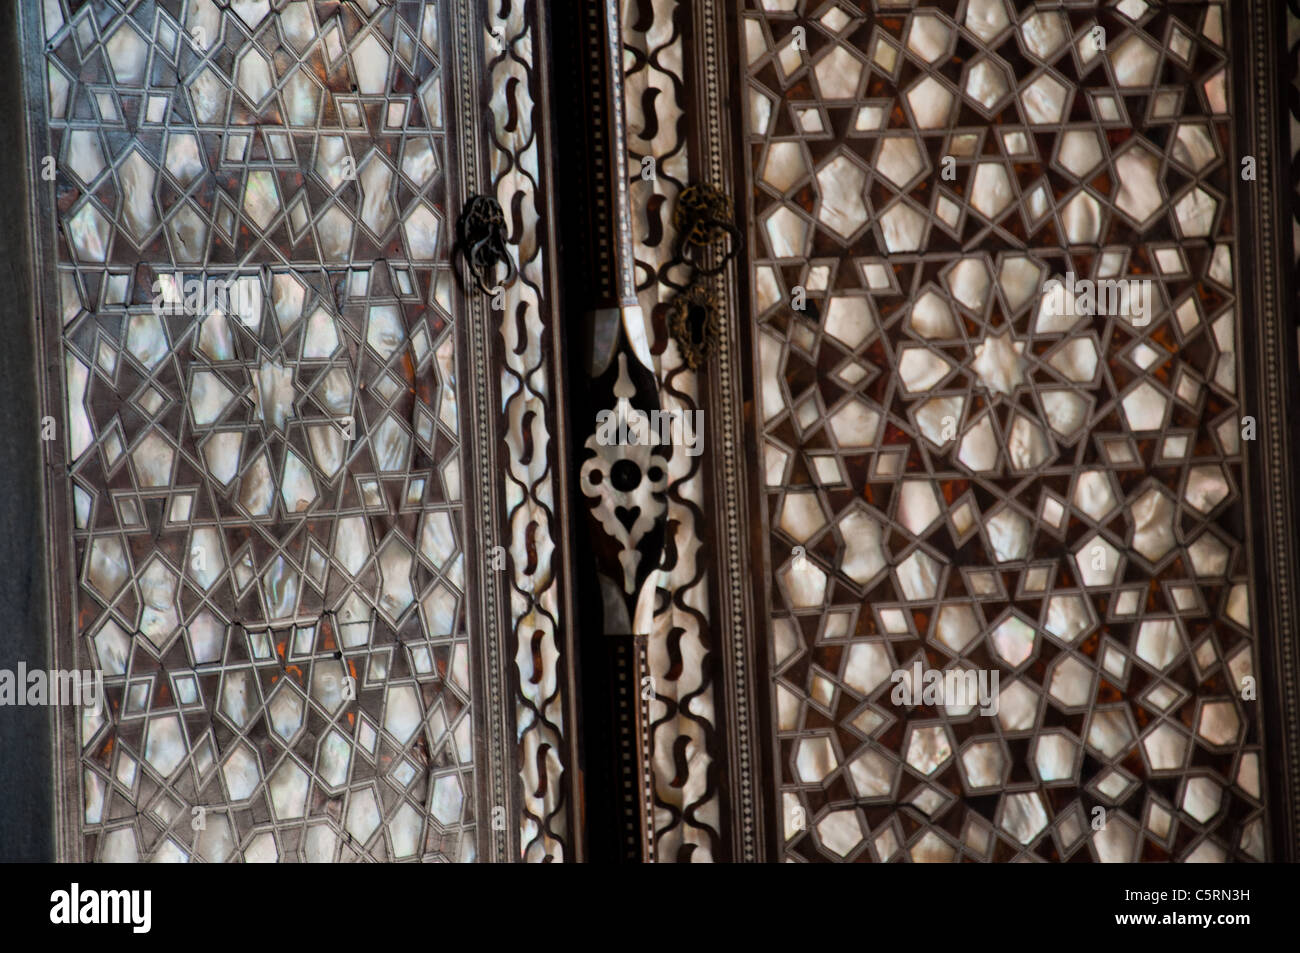 Puertas De Perlas Fotos e Imágenes de stock - Alamy